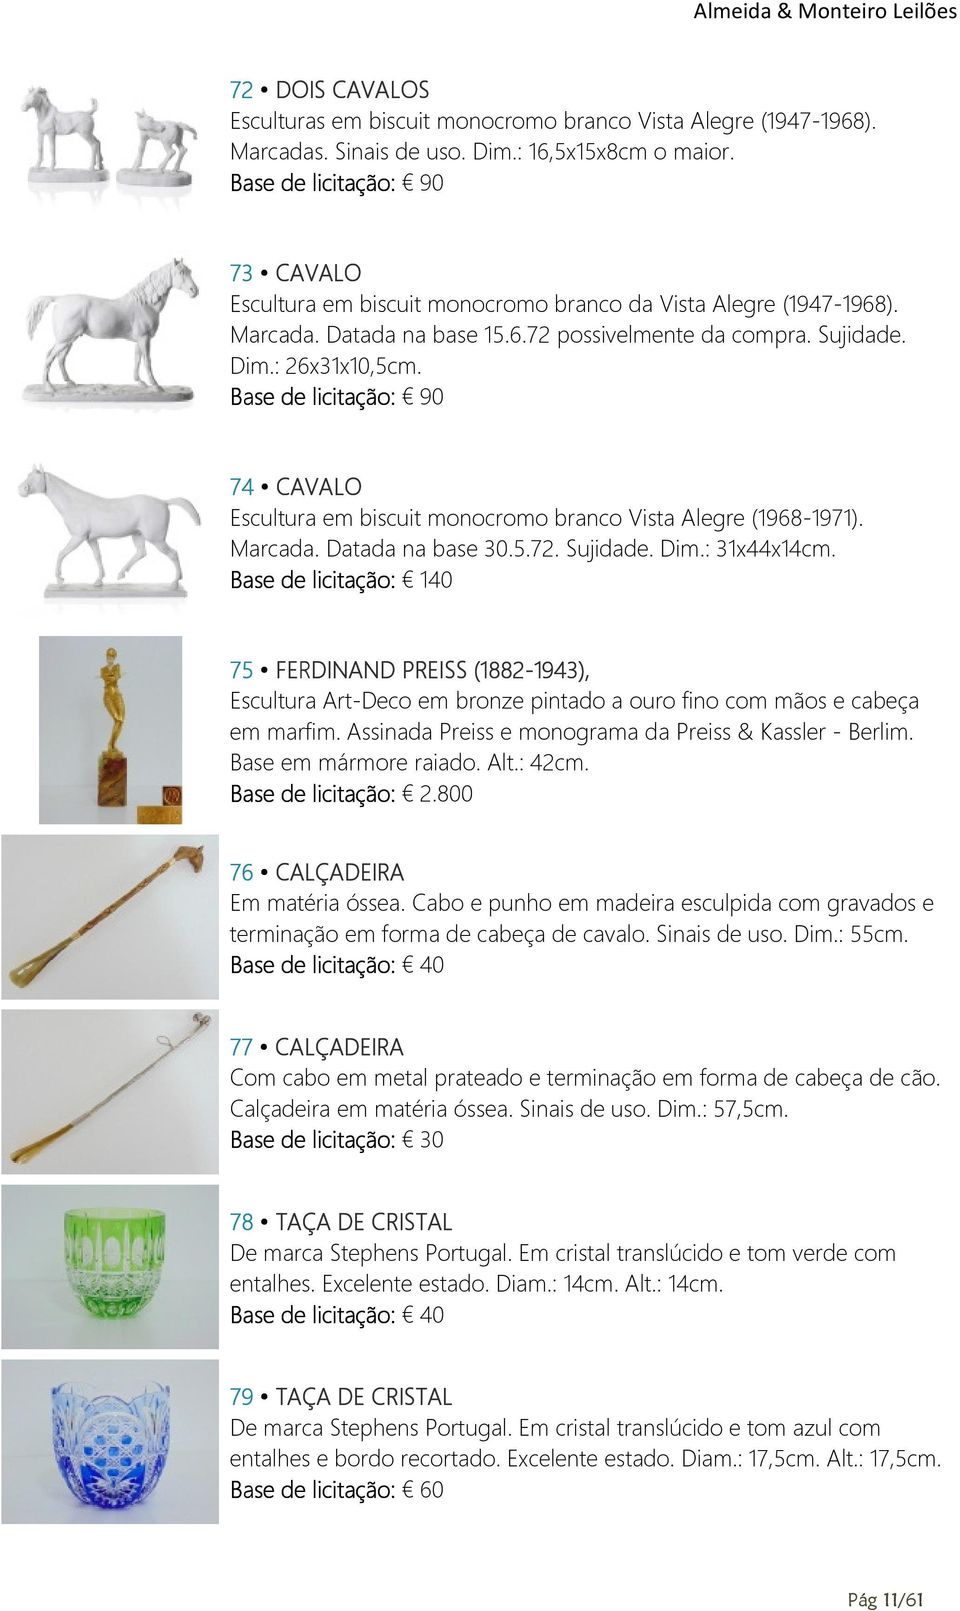 Base de licitação: 90 74 CAVALO Escultura em biscuit monocromo branco Vista Alegre (1968-1971). Marcada. Datada na base 30.5.72. Sujidade. Dim.: 31x44x14cm.